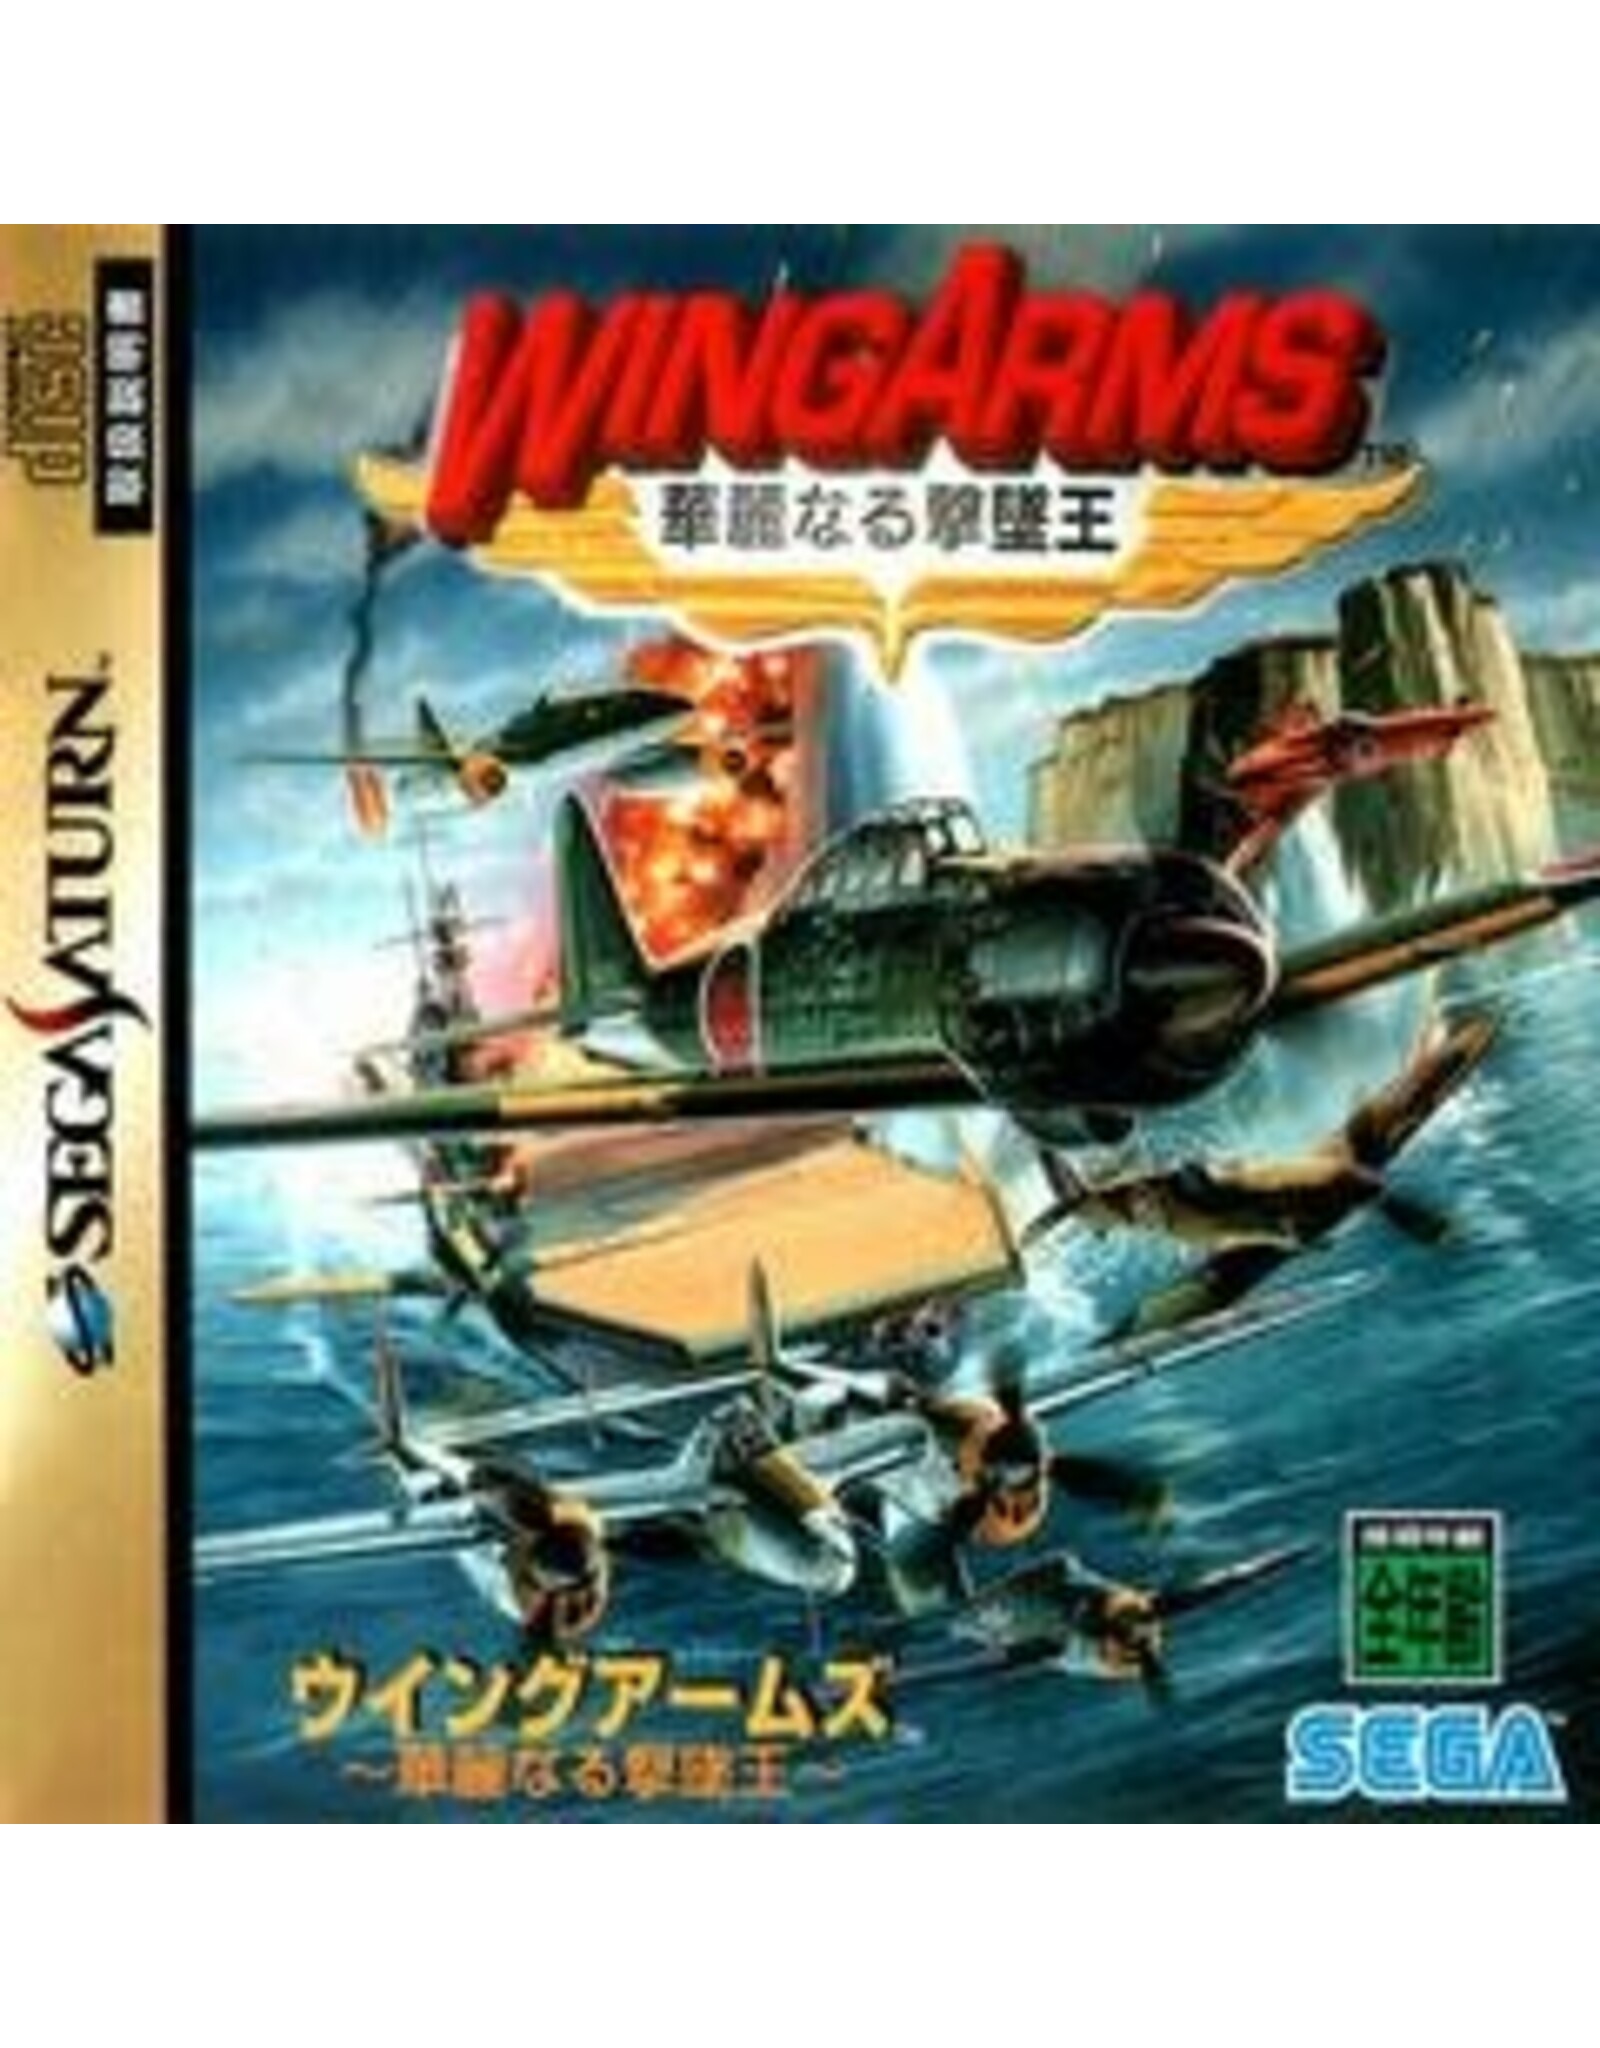 Sega Saturn Wing Arms - JP Import (Used)